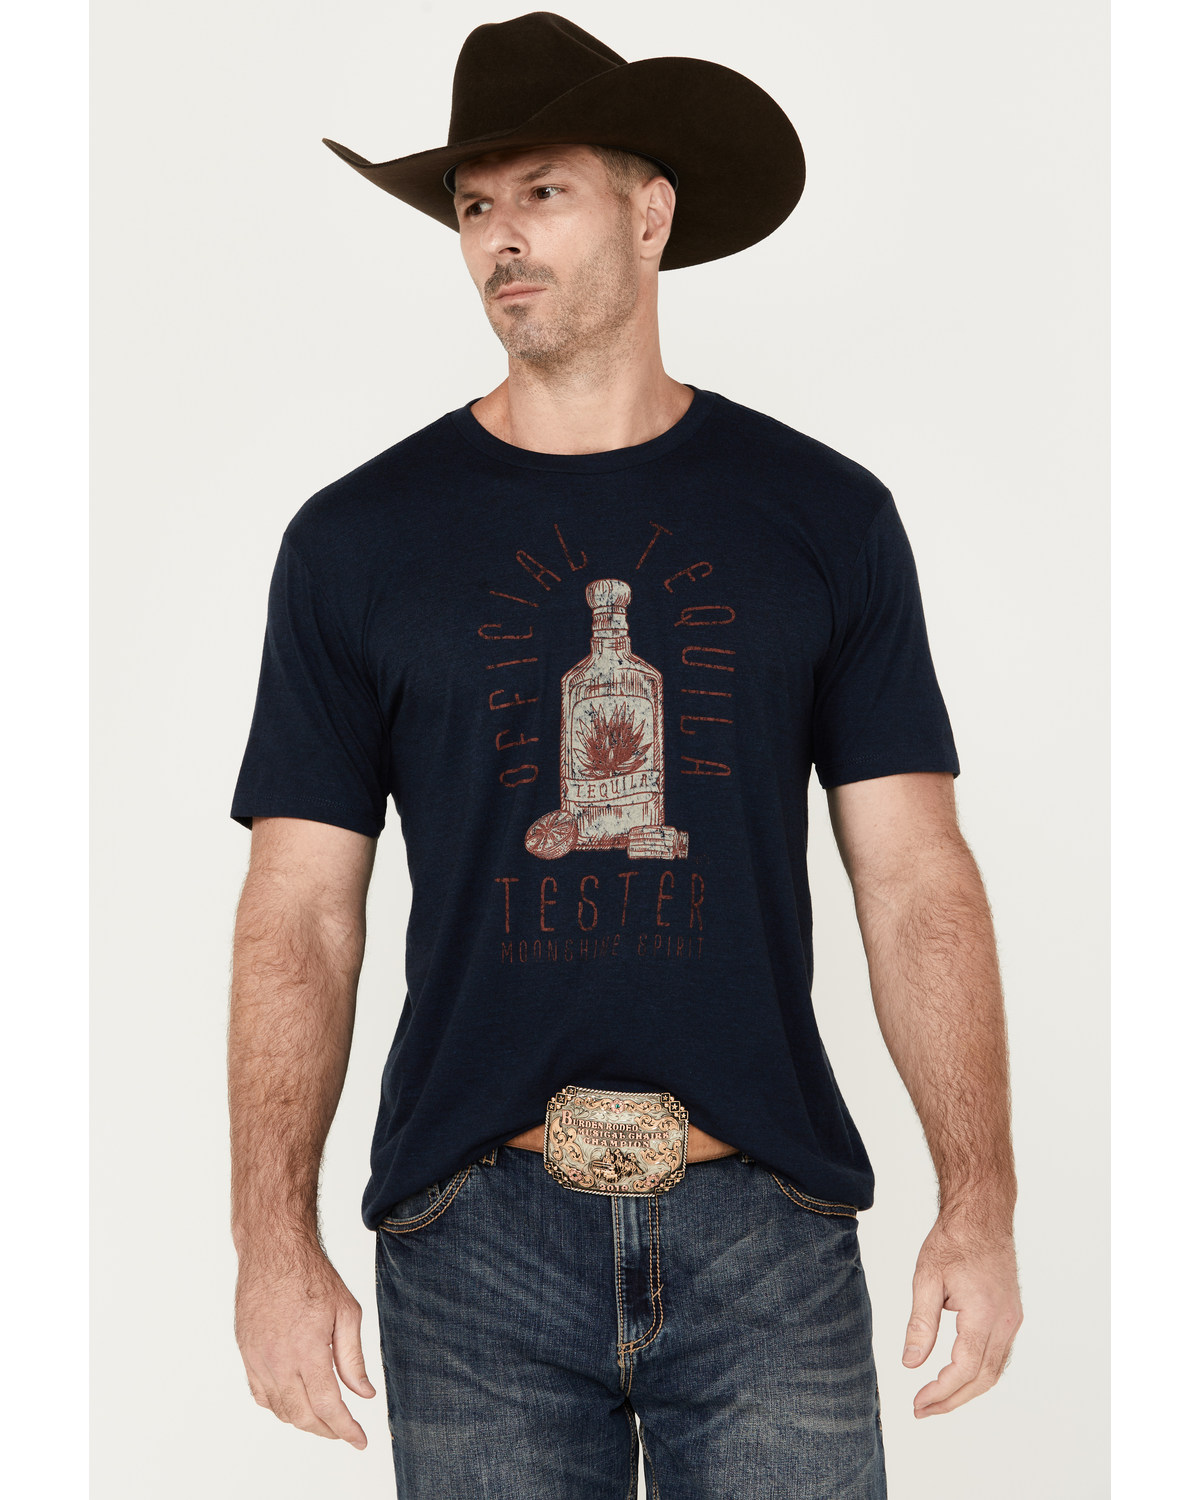 Moonshine Spirit Men's Tequila Tester Short Sleeve Graphic T-Shirt